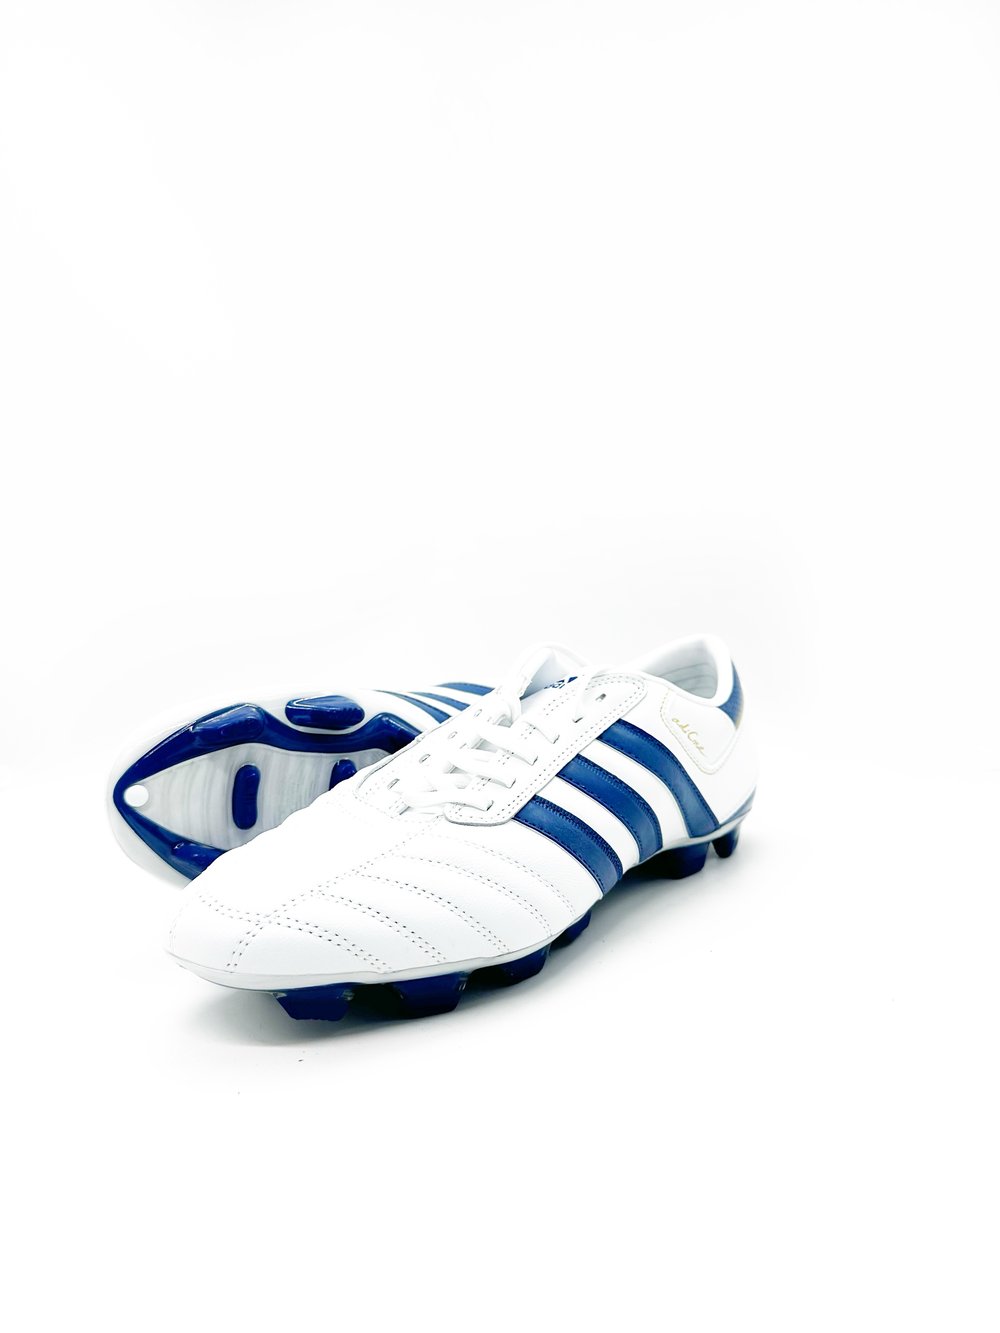 Image of Adidas Adicore FG BLUE WHITE